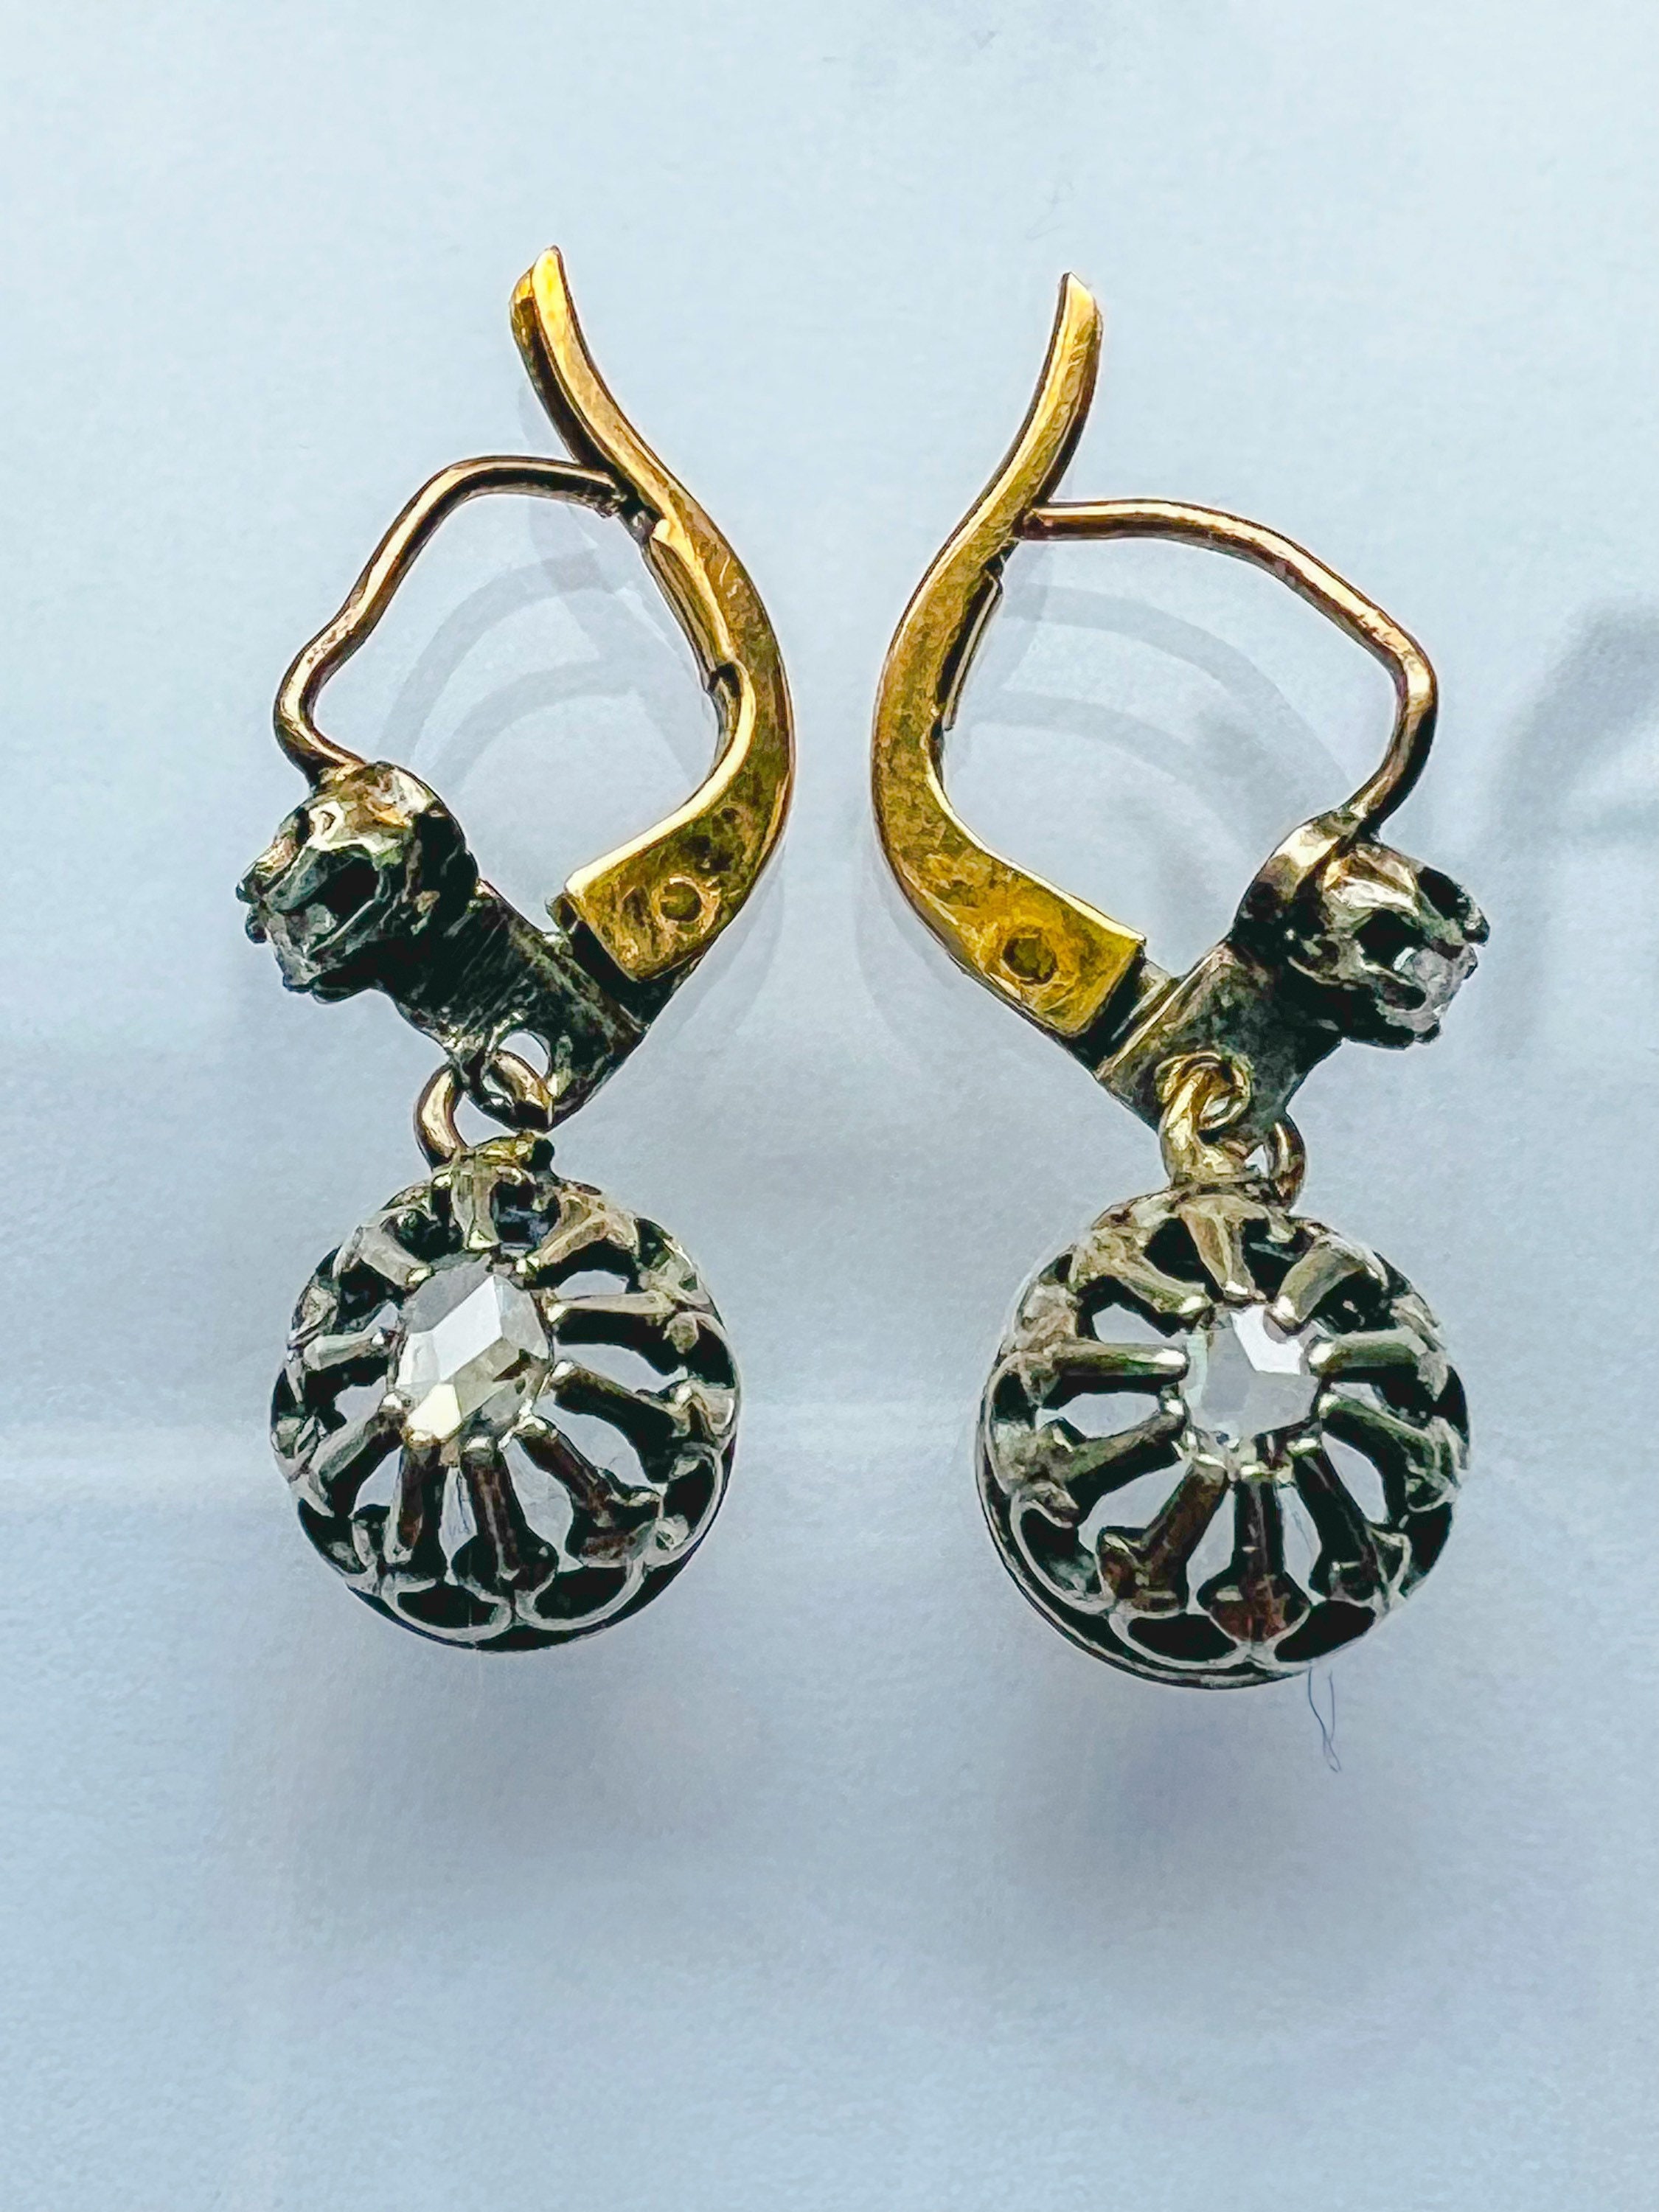 DIAMOND EARRINGS. 14K GOLD ANTIQUE VICTORIAN DIAMOND EARRINGS. WESTERN EUROPE 19TH CENTURY